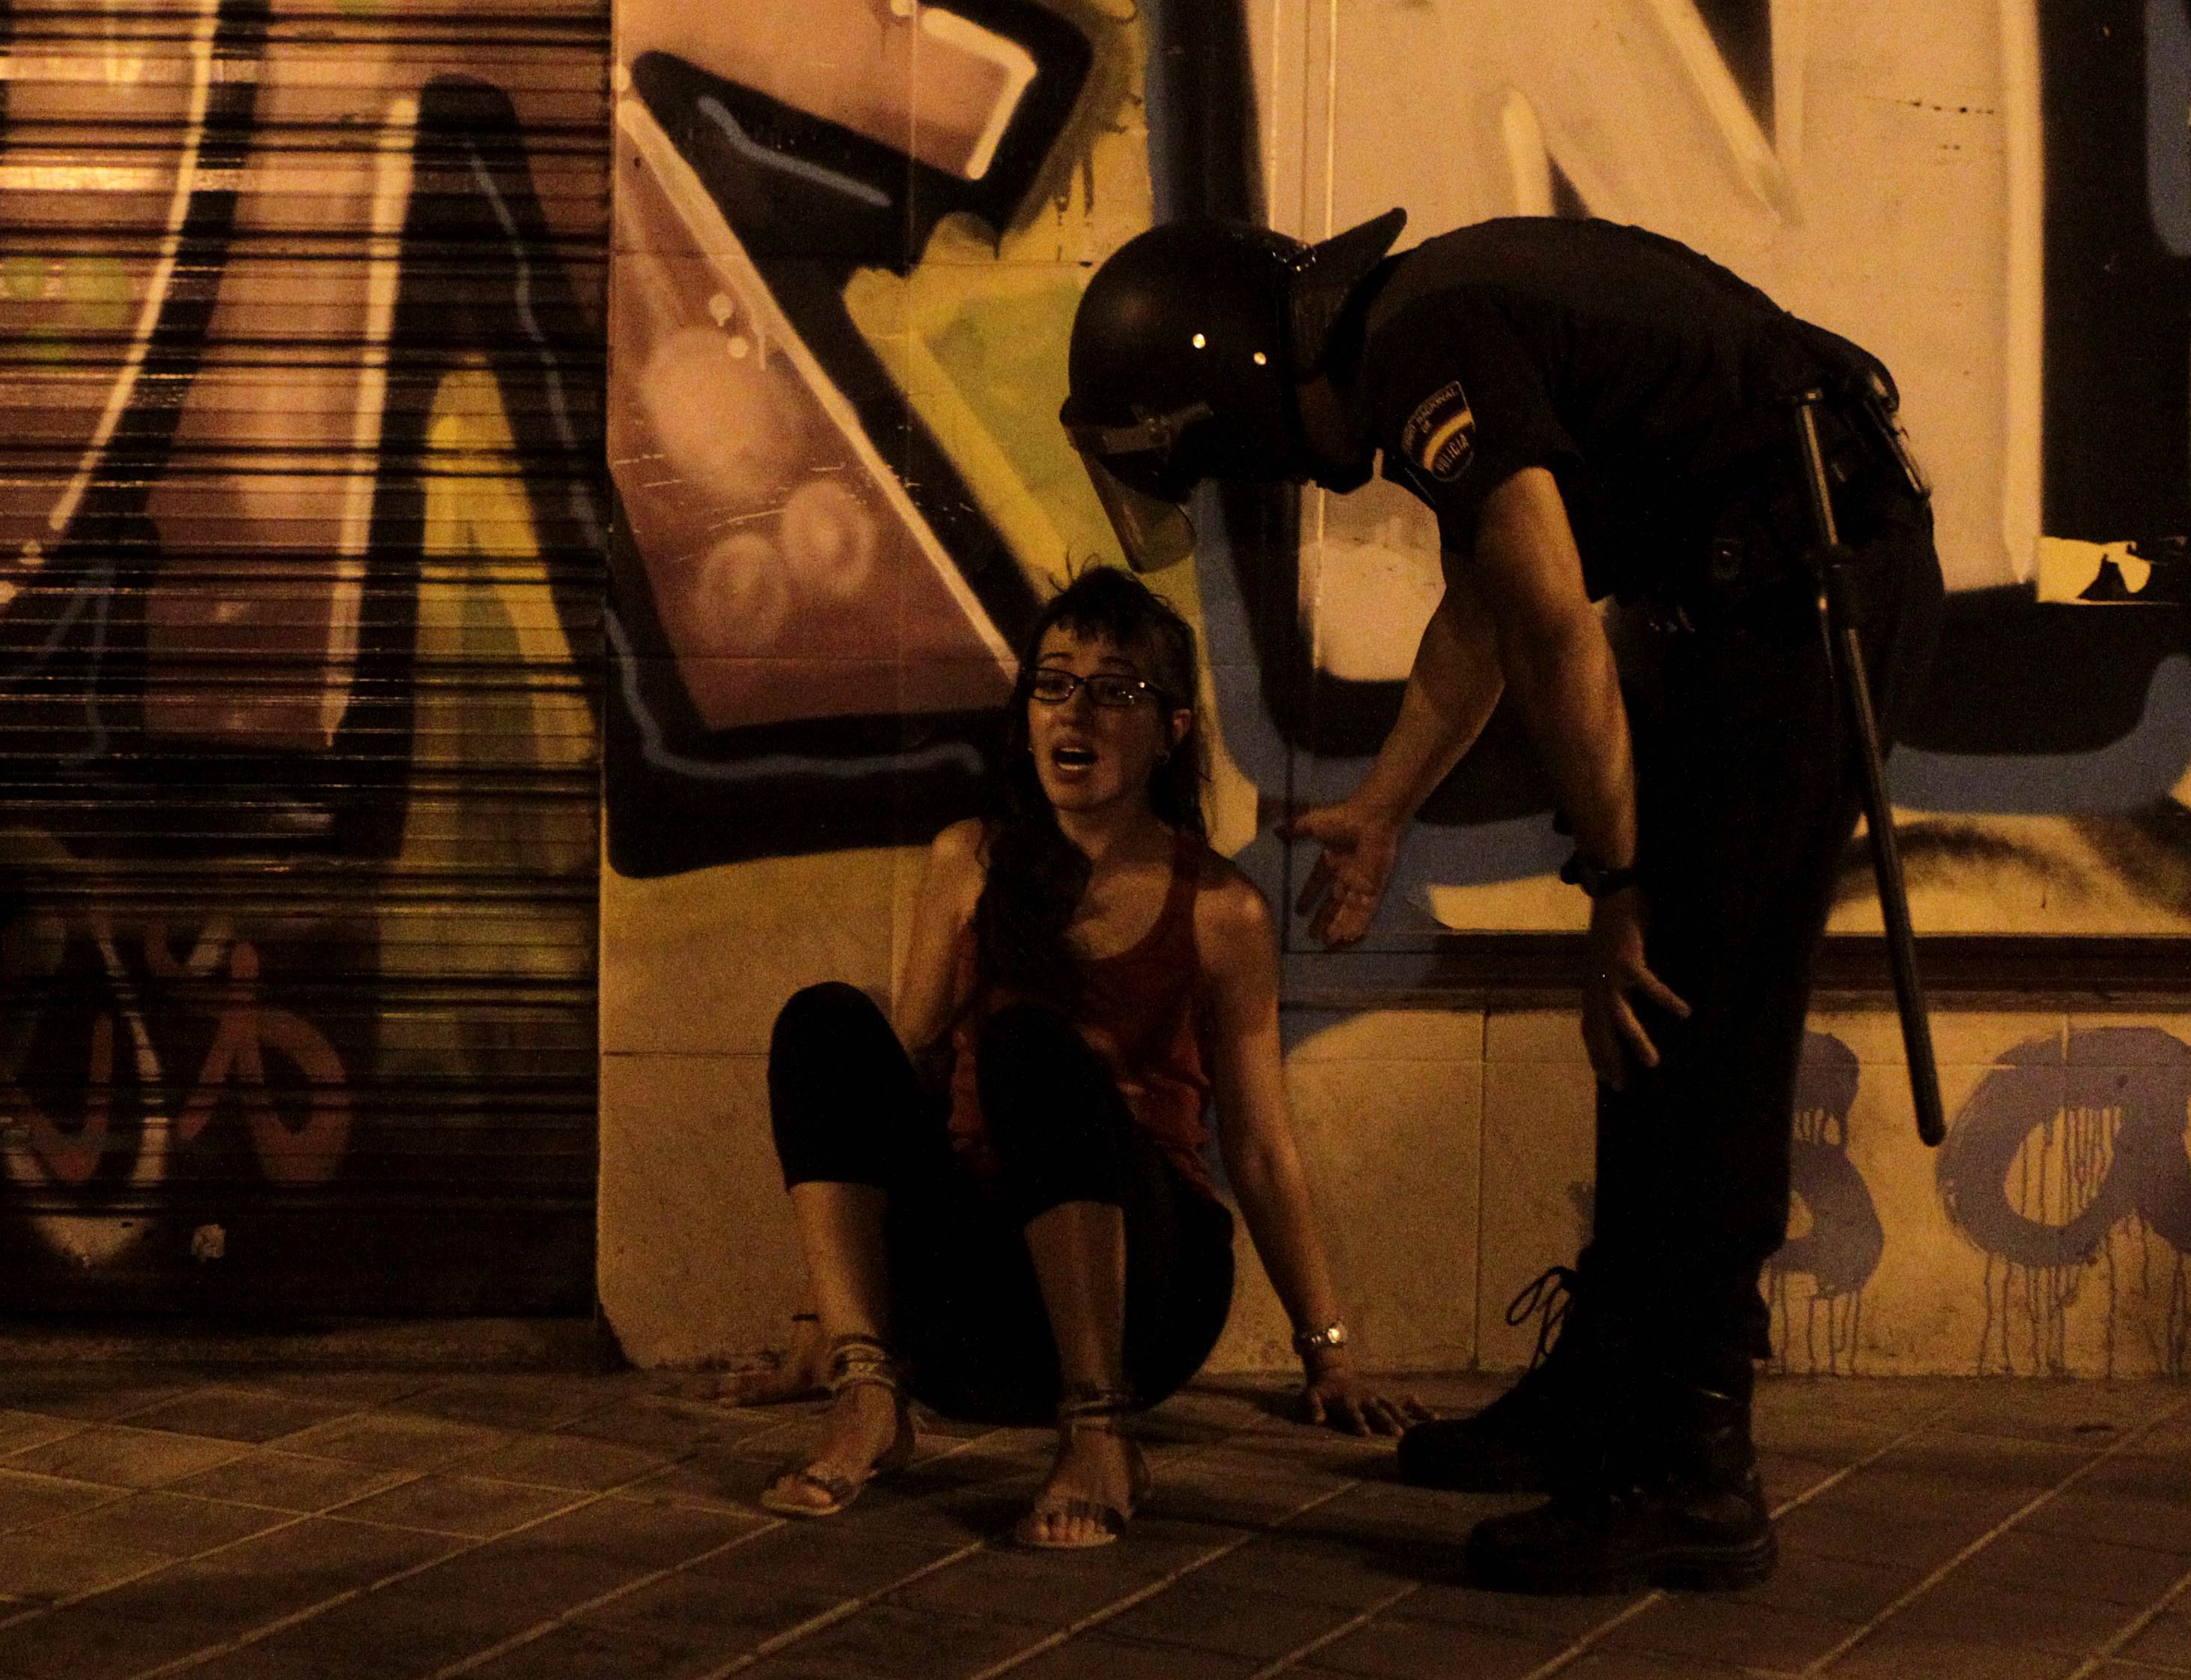 Επεισόδια με τραυματισμούς και συλλήψεις στην Ισπανία. ΦΩΤΟ REUETERS